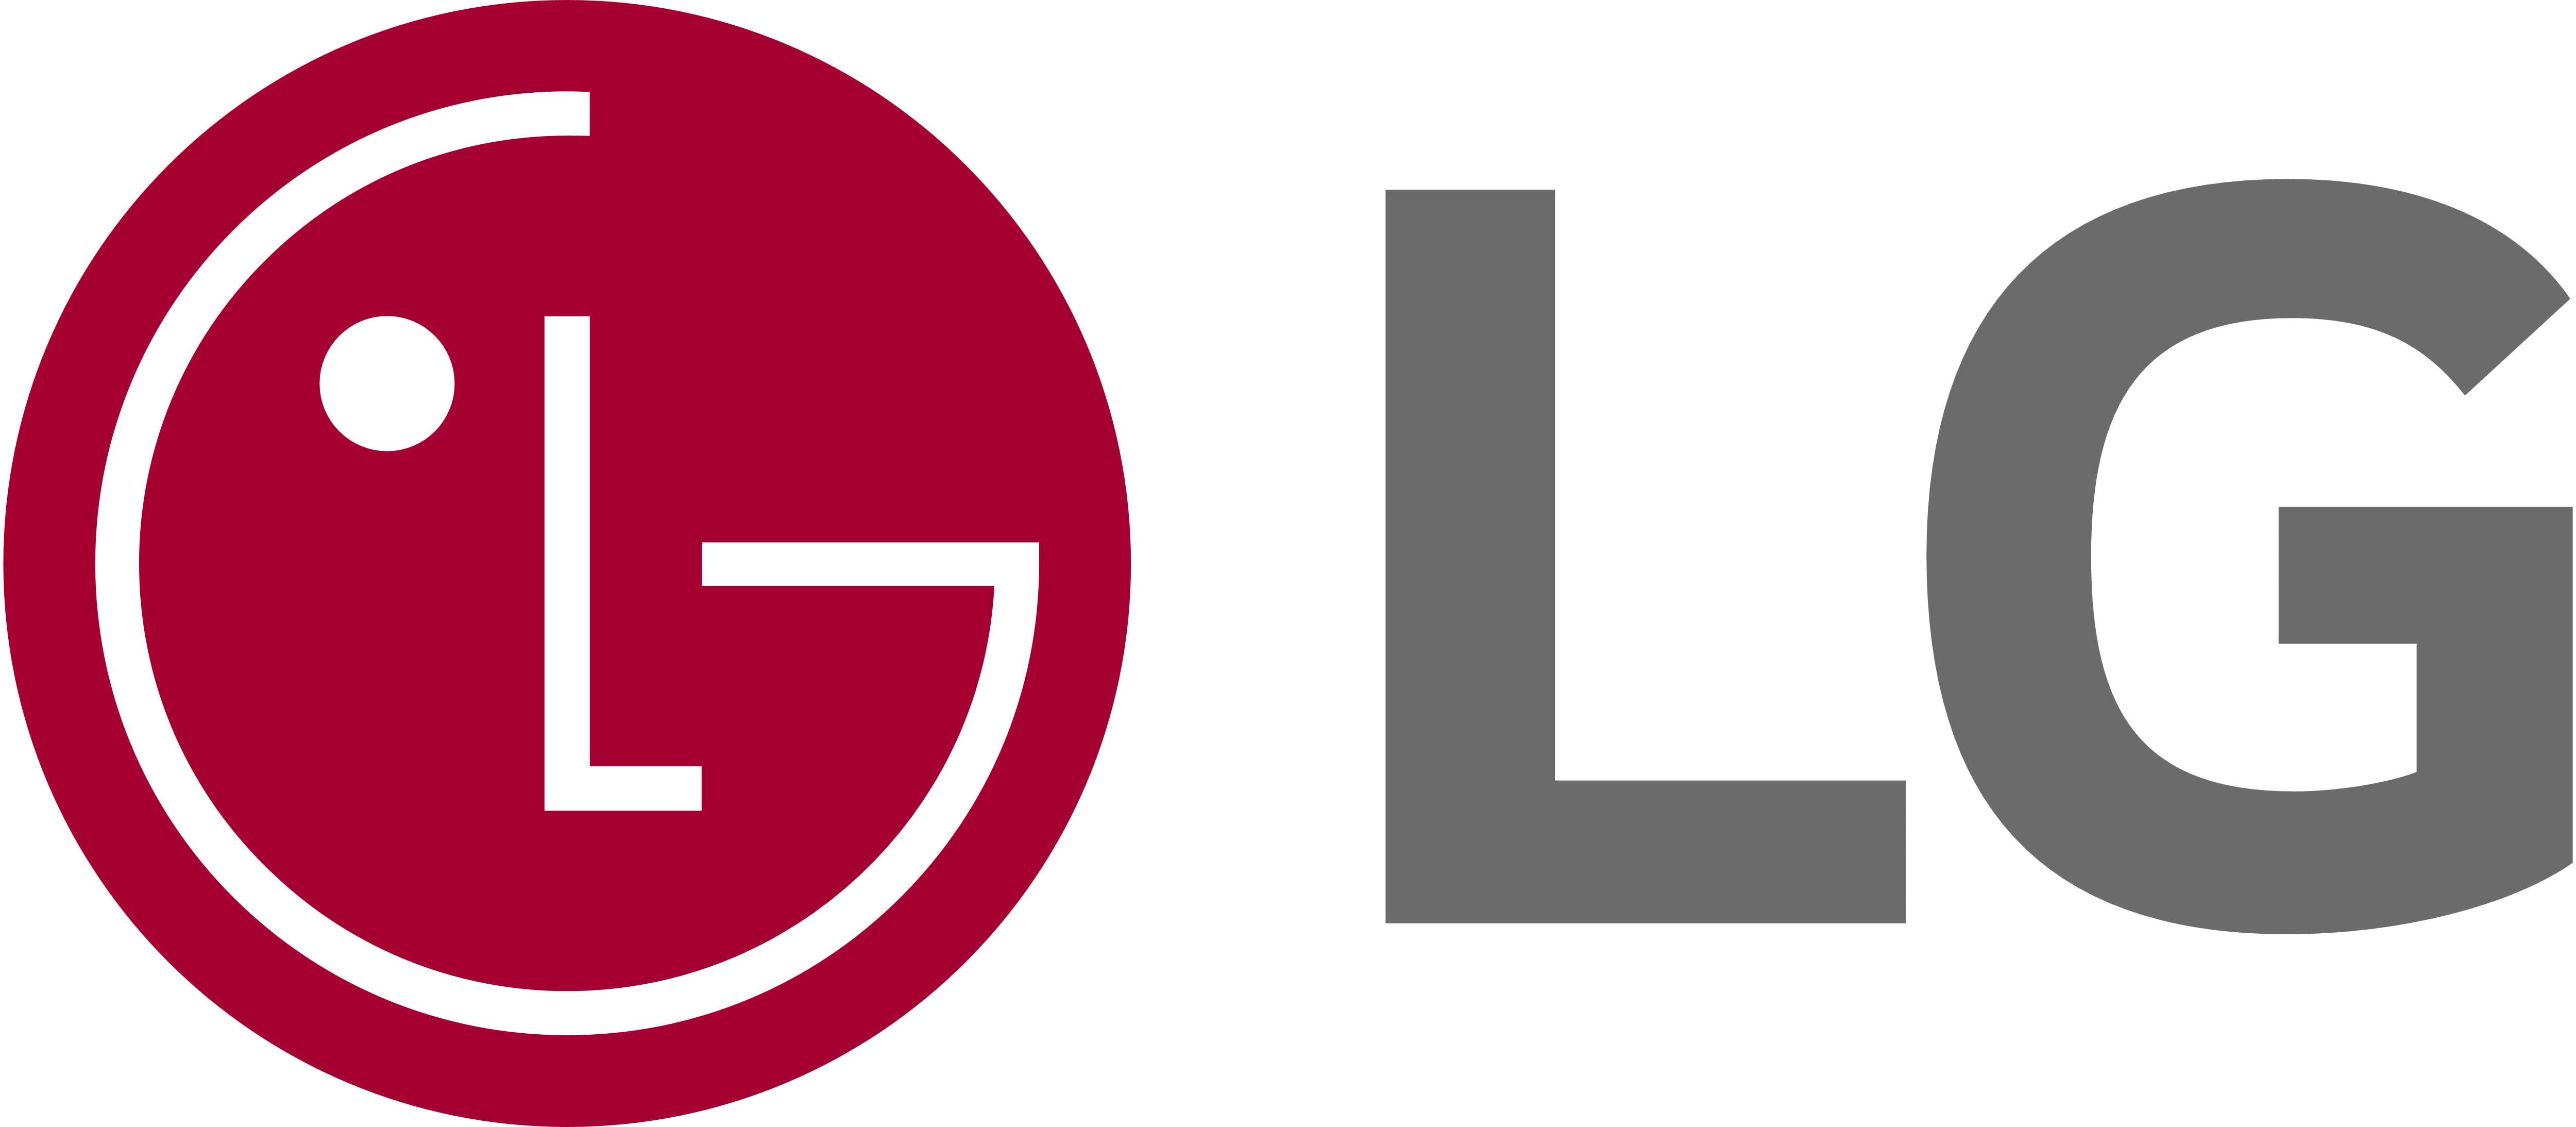 LG Home Dryer Repair, GE Gas Dryer Repair